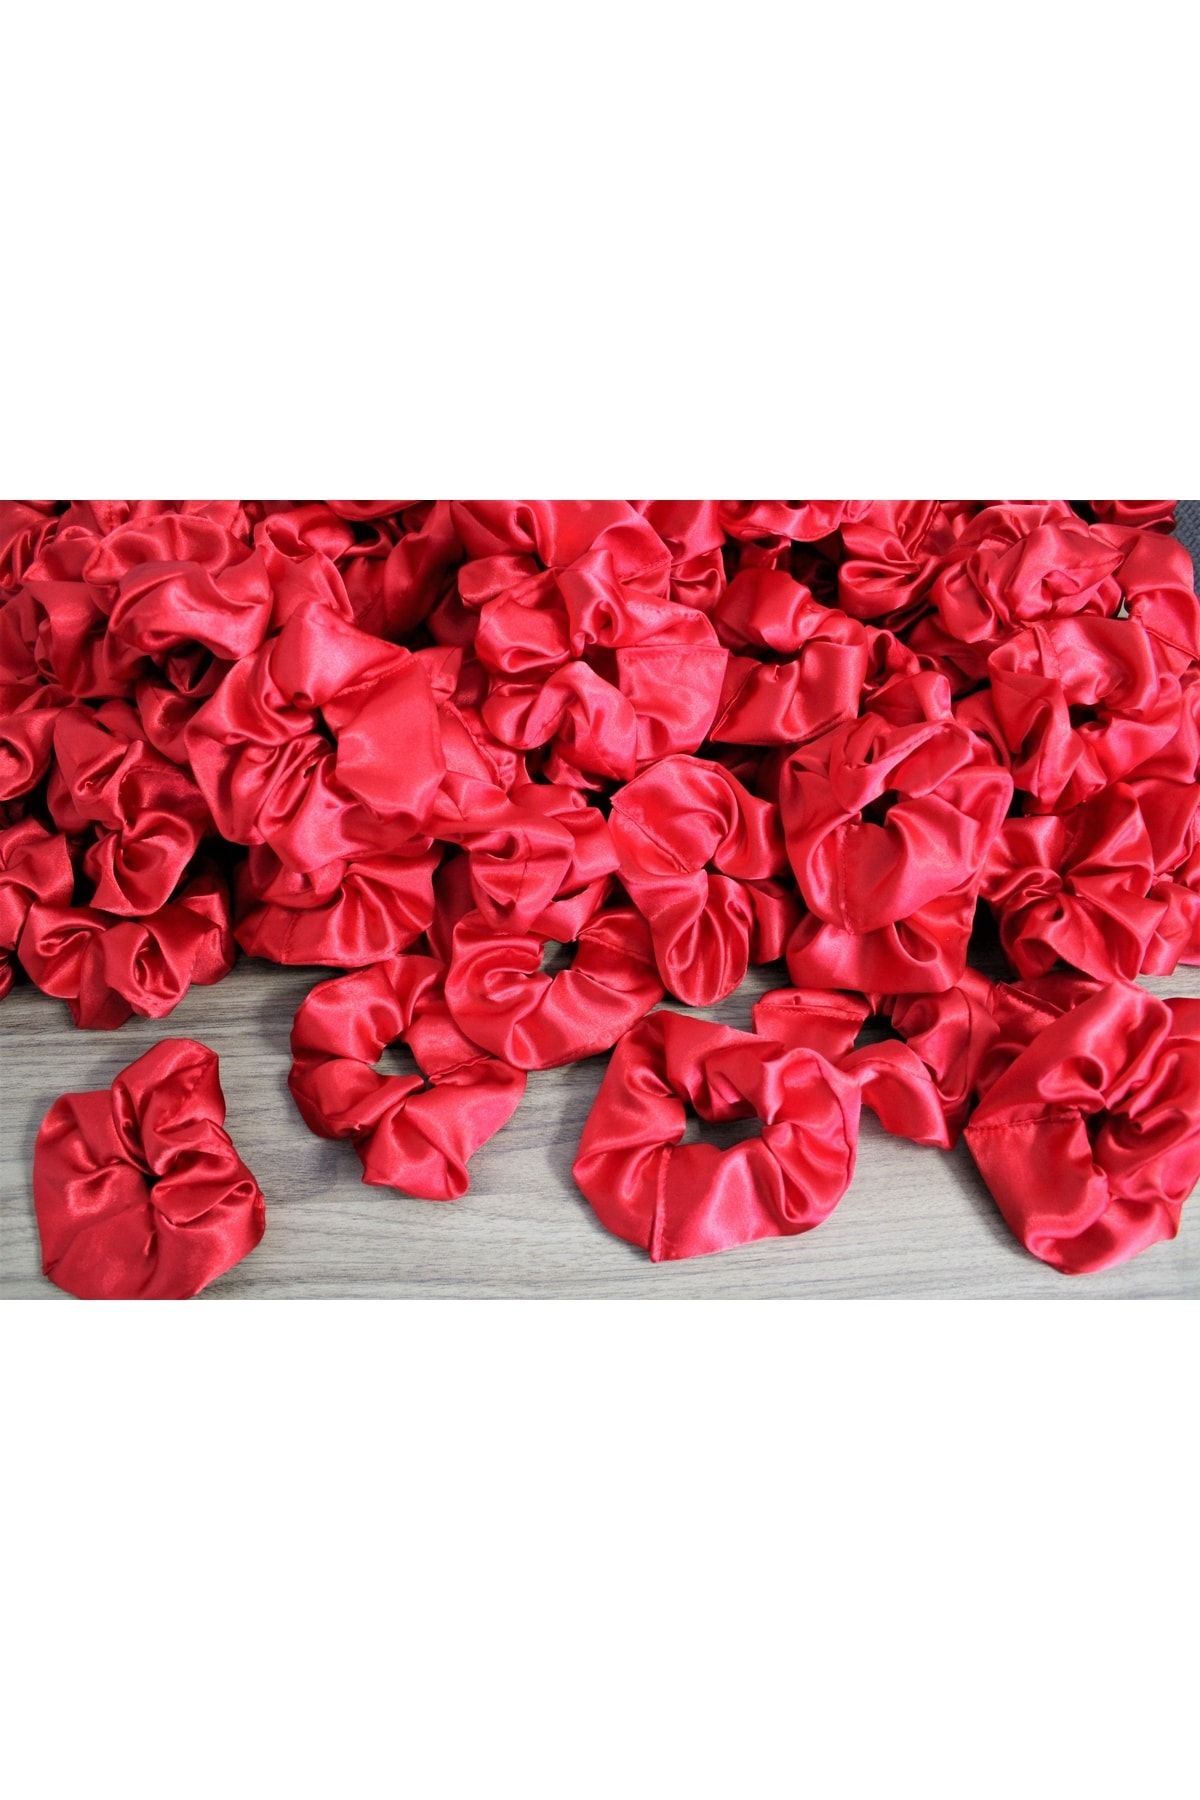 çınar bahçesi 50'li Kadın Kına Ve Nişan Düğün Için Lastikli Simit Kırmızı Saten Scrunchie Saç Toka Set